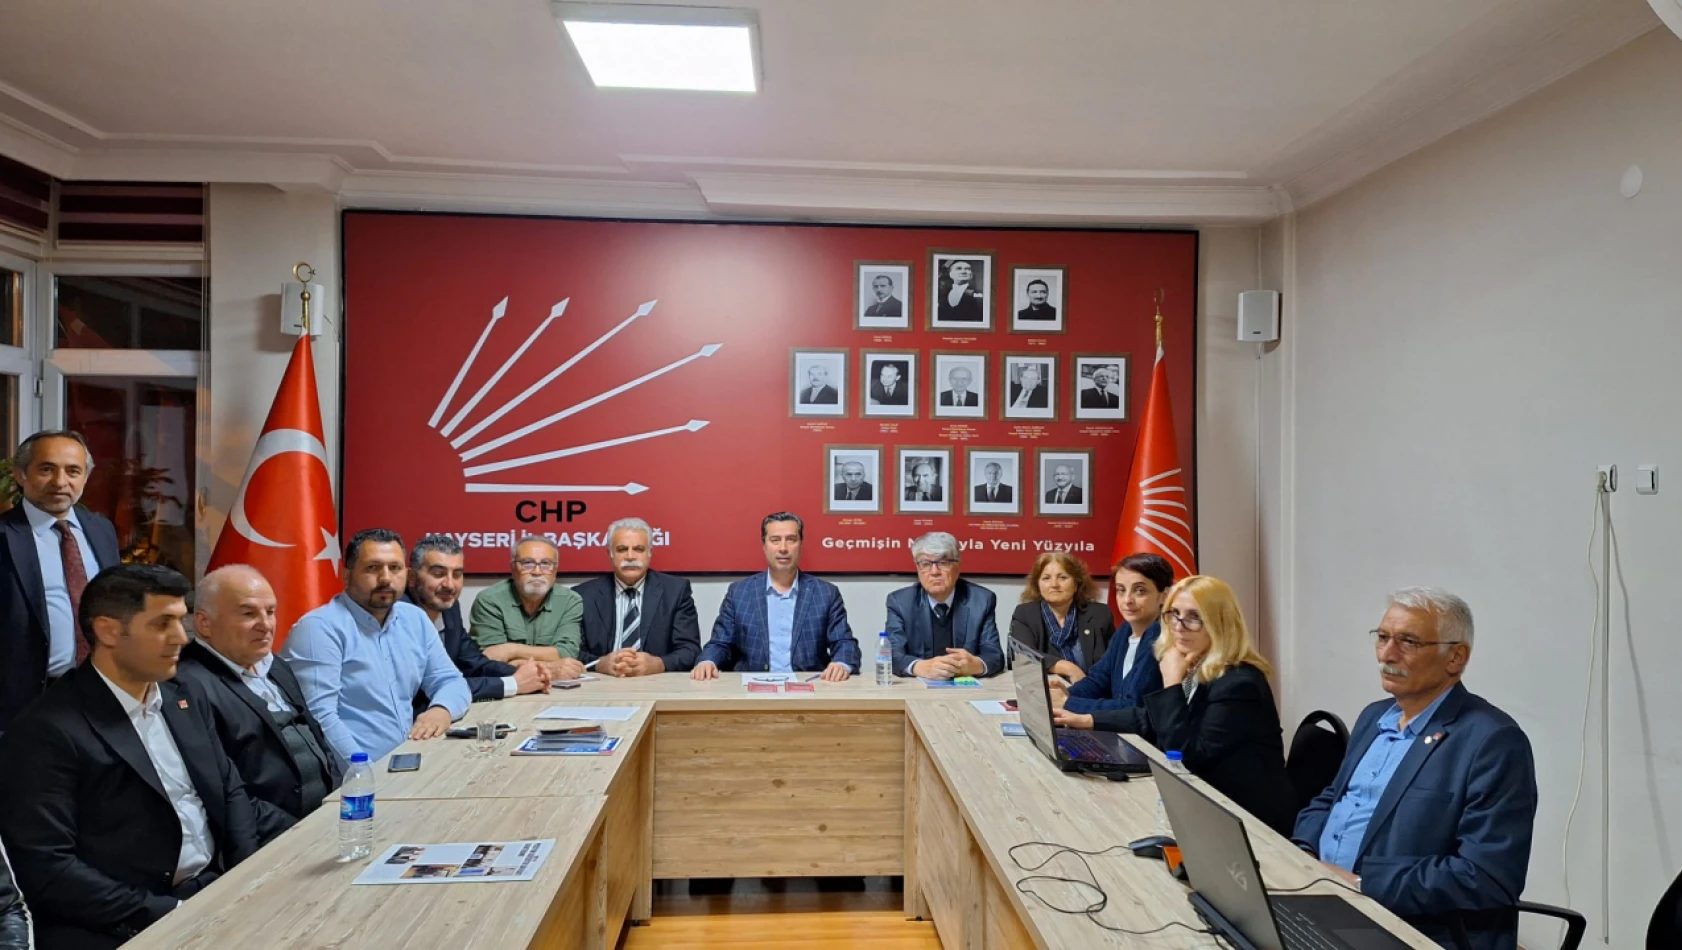 CHP Kayseri'den ilk açıklama geldi! Keskin, sonuçları nasıl değerlendi?